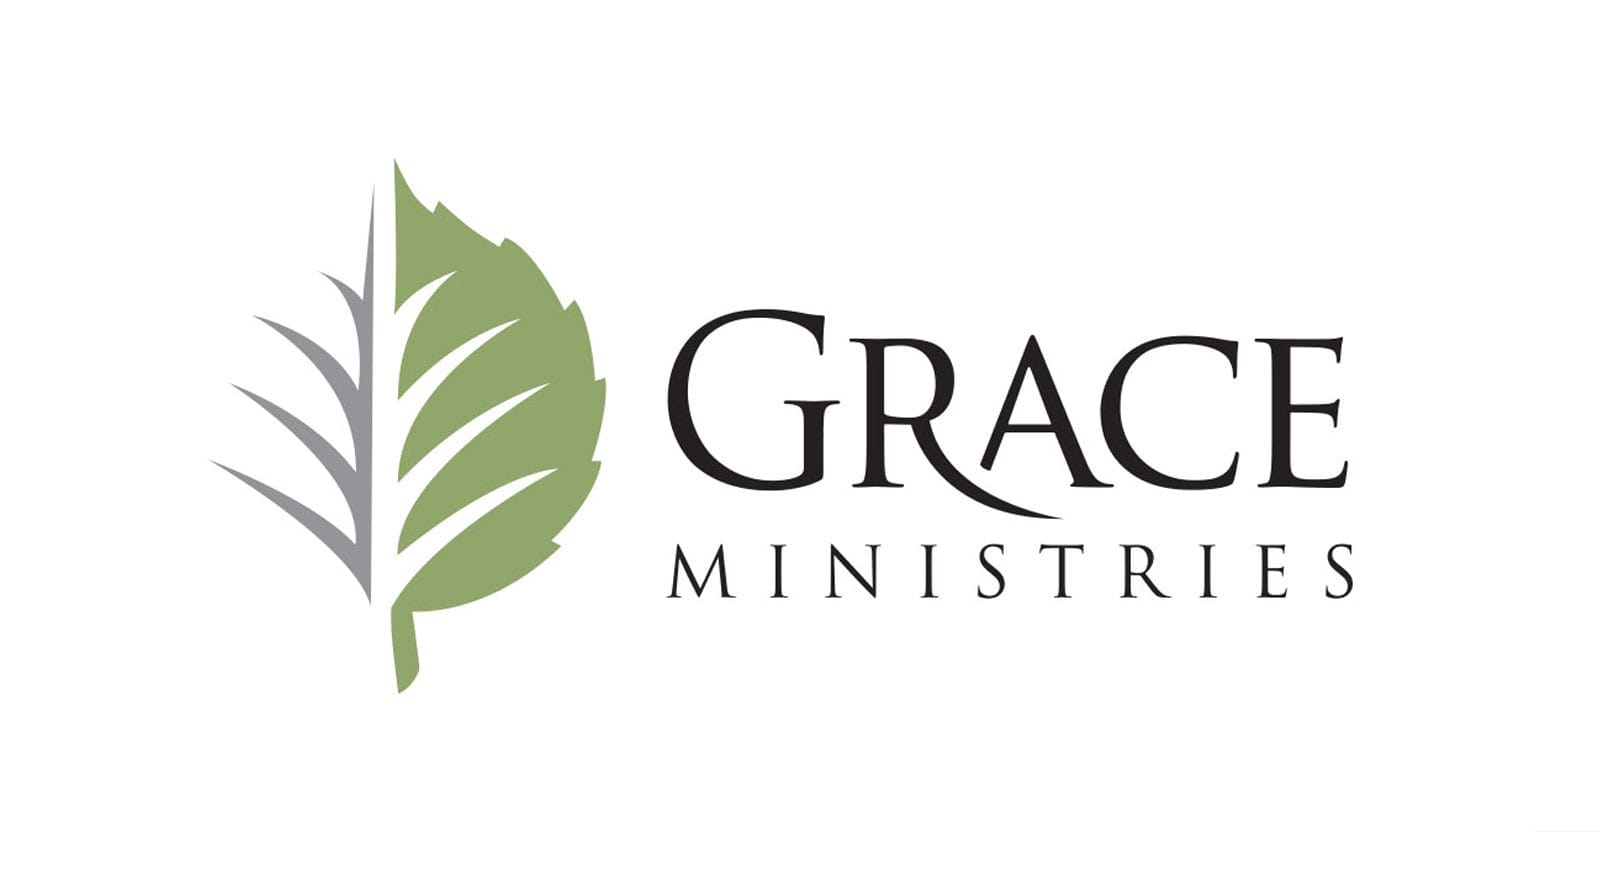 Grace Ministries